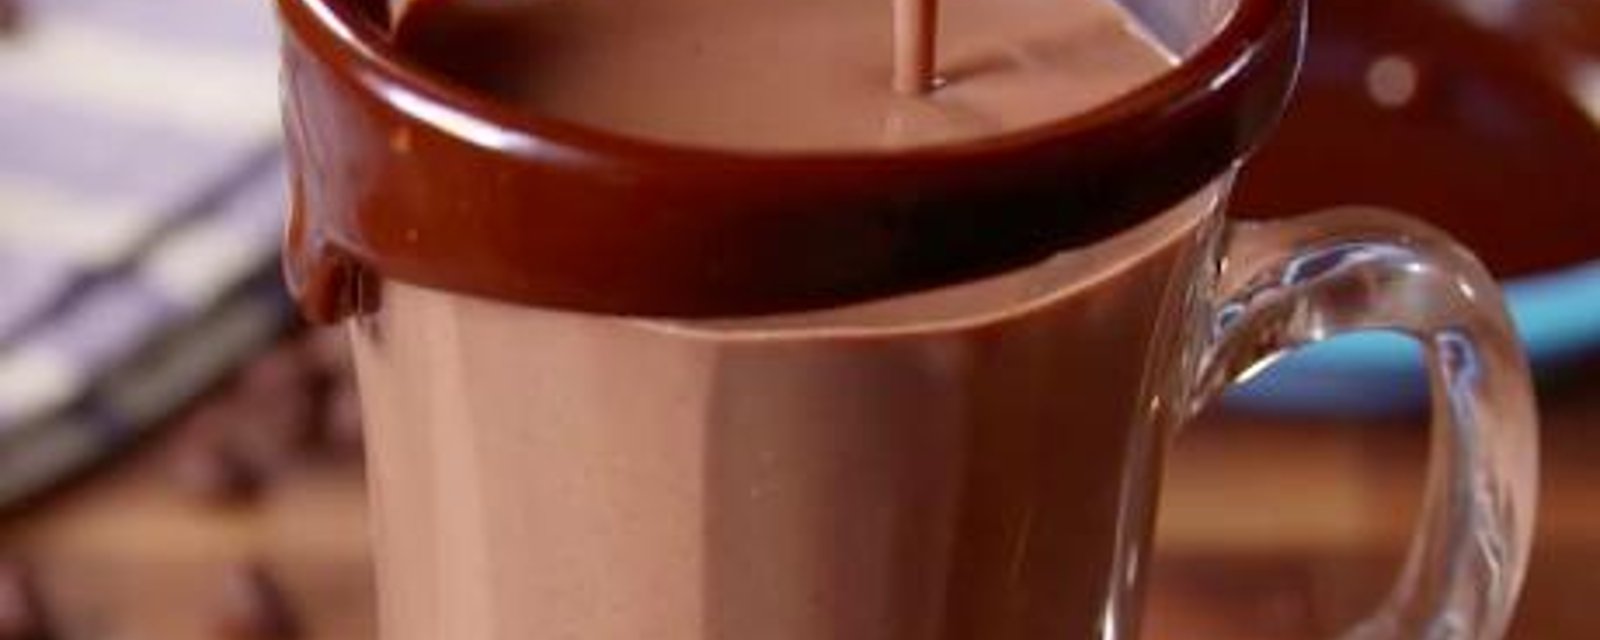 Comment faire le parfait chocolat chaud